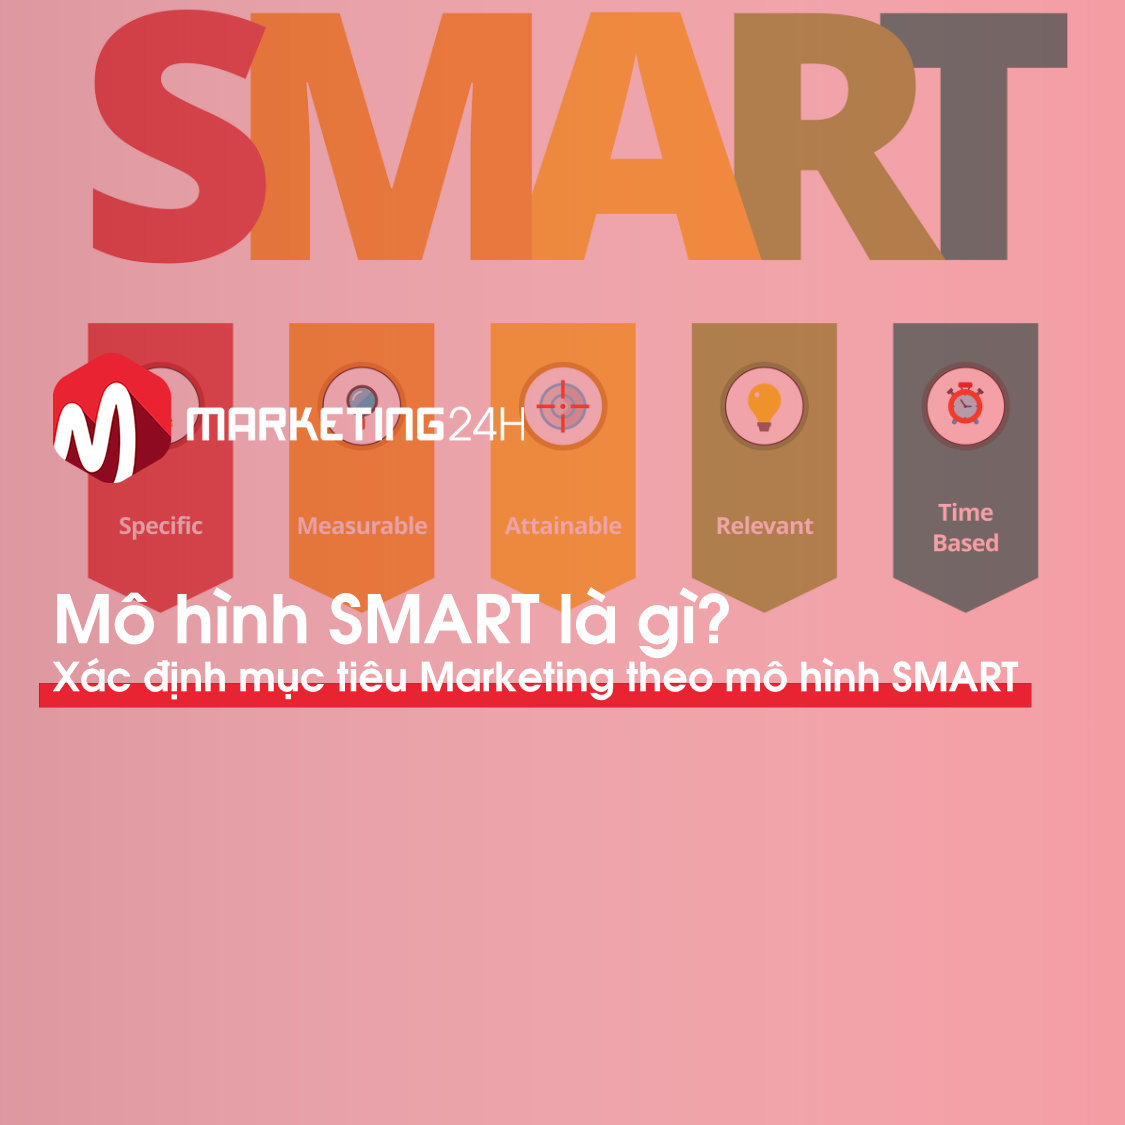 Mô hình SMART là gì? Xác định mục tiêu Marketing theo mô hình SMART